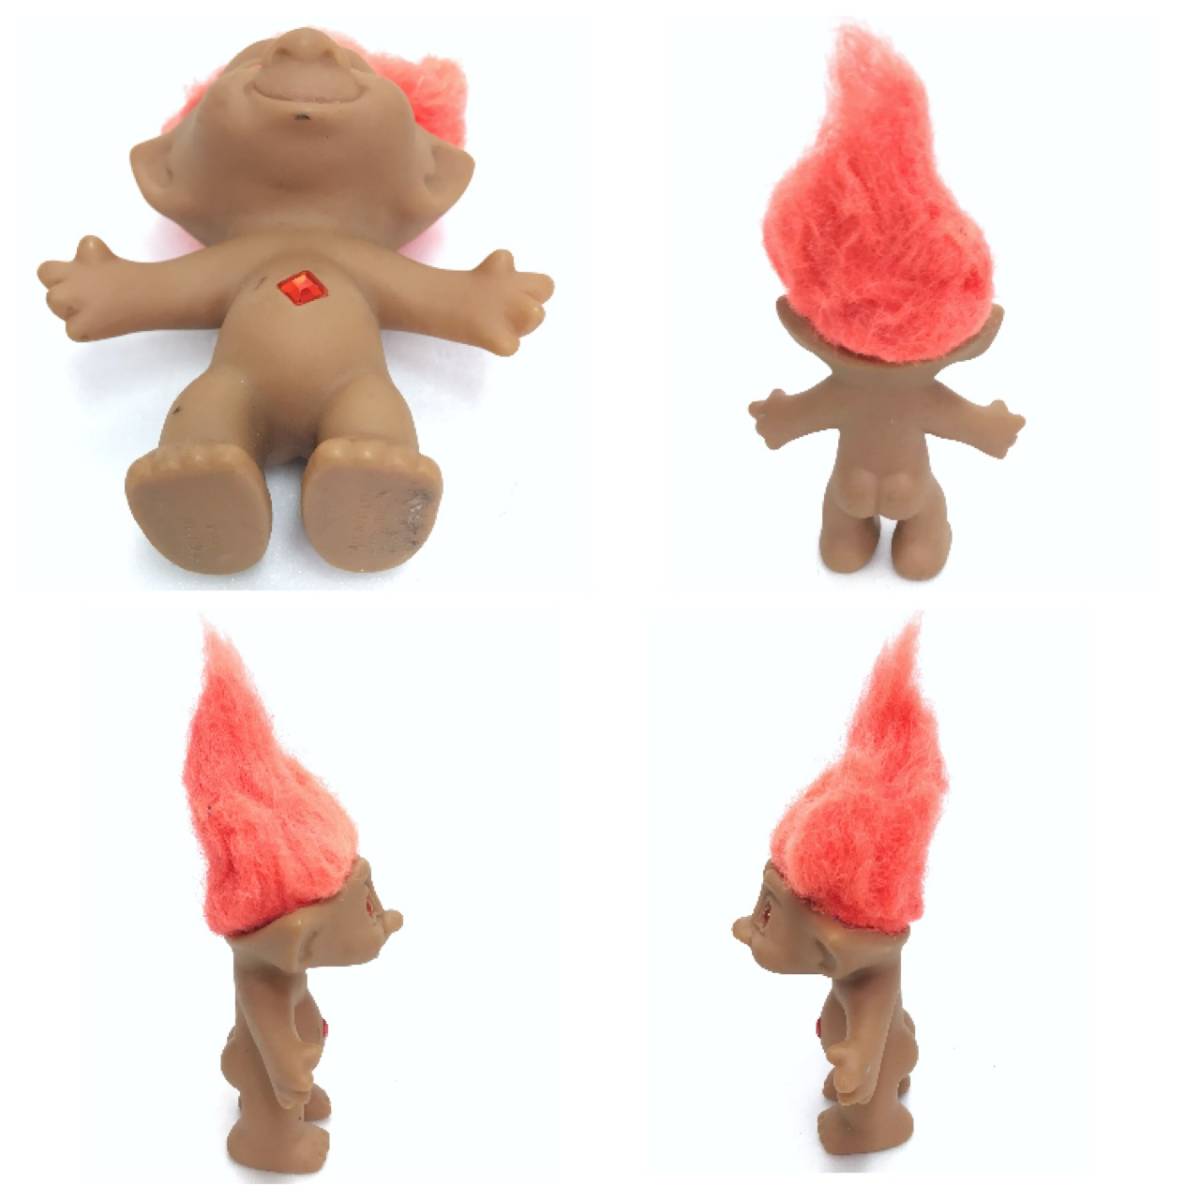 トロール 人形 オレンジ ヘア ストーン おもちゃ 玩具 レトロ ビンテージ アンティーク オールド TOY HOBBY コレクション TROLLDOLL D-2103_画像2